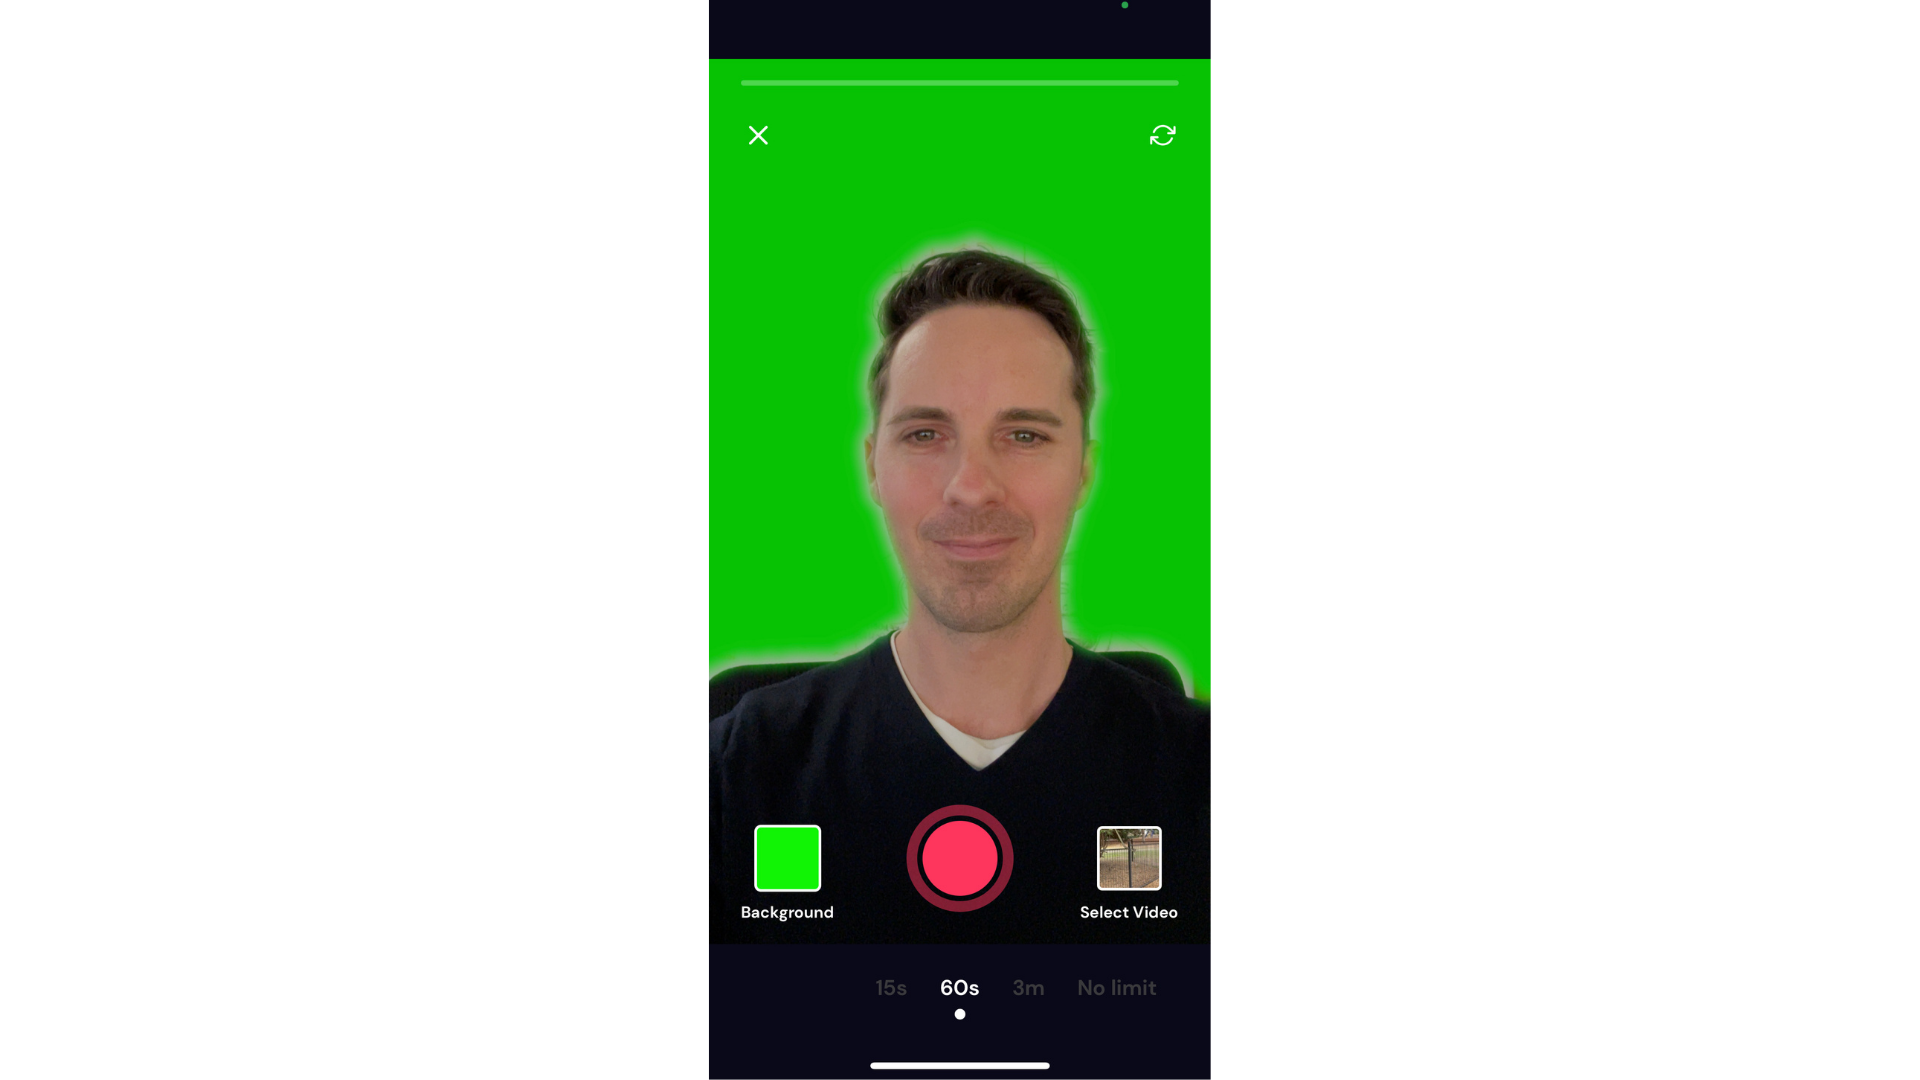 Usuario utilizando el efecto de pantalla verde en la aplicación Cliphcamp para iOS